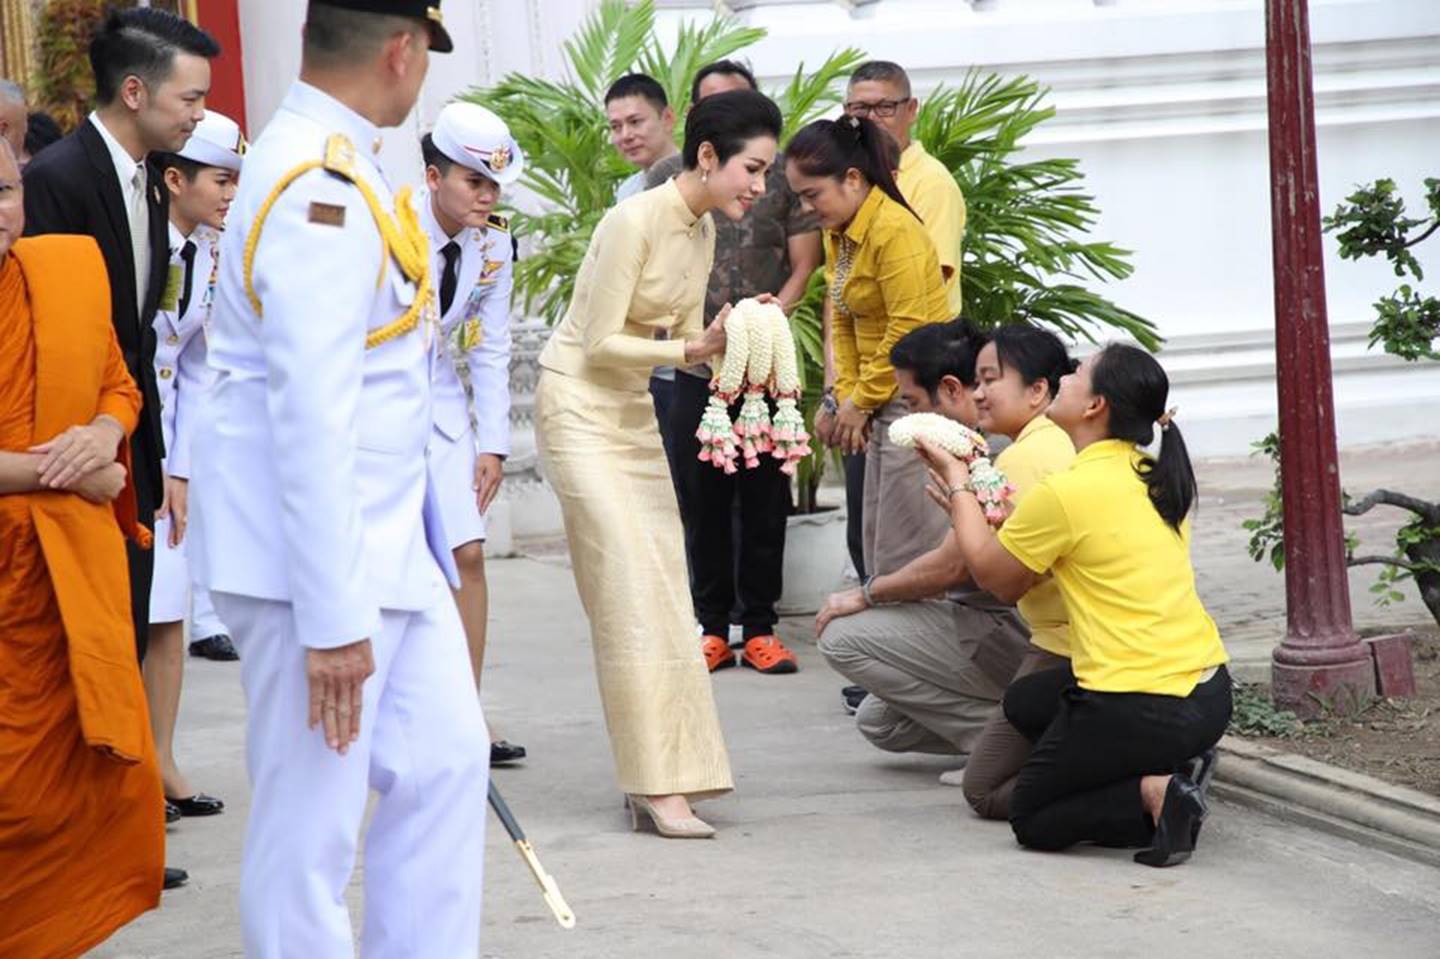 Hoàng quý phi Thái Lan thực hiện nhiệm vụ hoàng gia đầu tiên trên cương vị mới với phong thái gây ngỡ ngàng-2